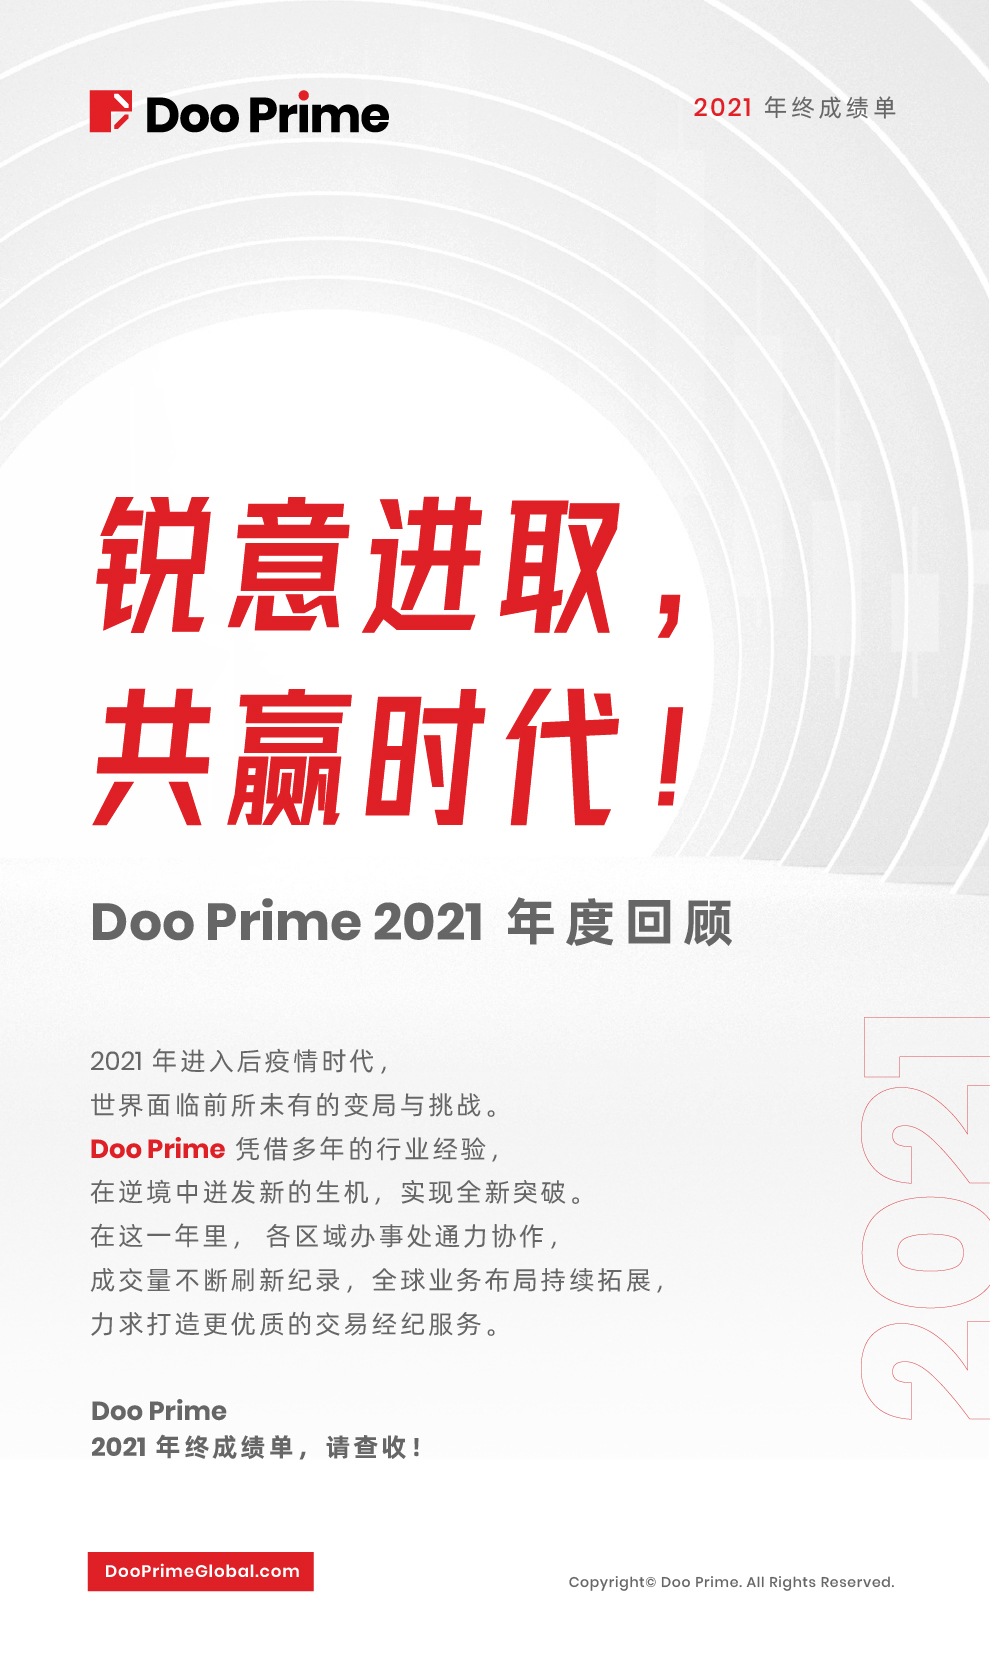 锐意进取，共赢时代！Doo Prime 2021 年度回顾 